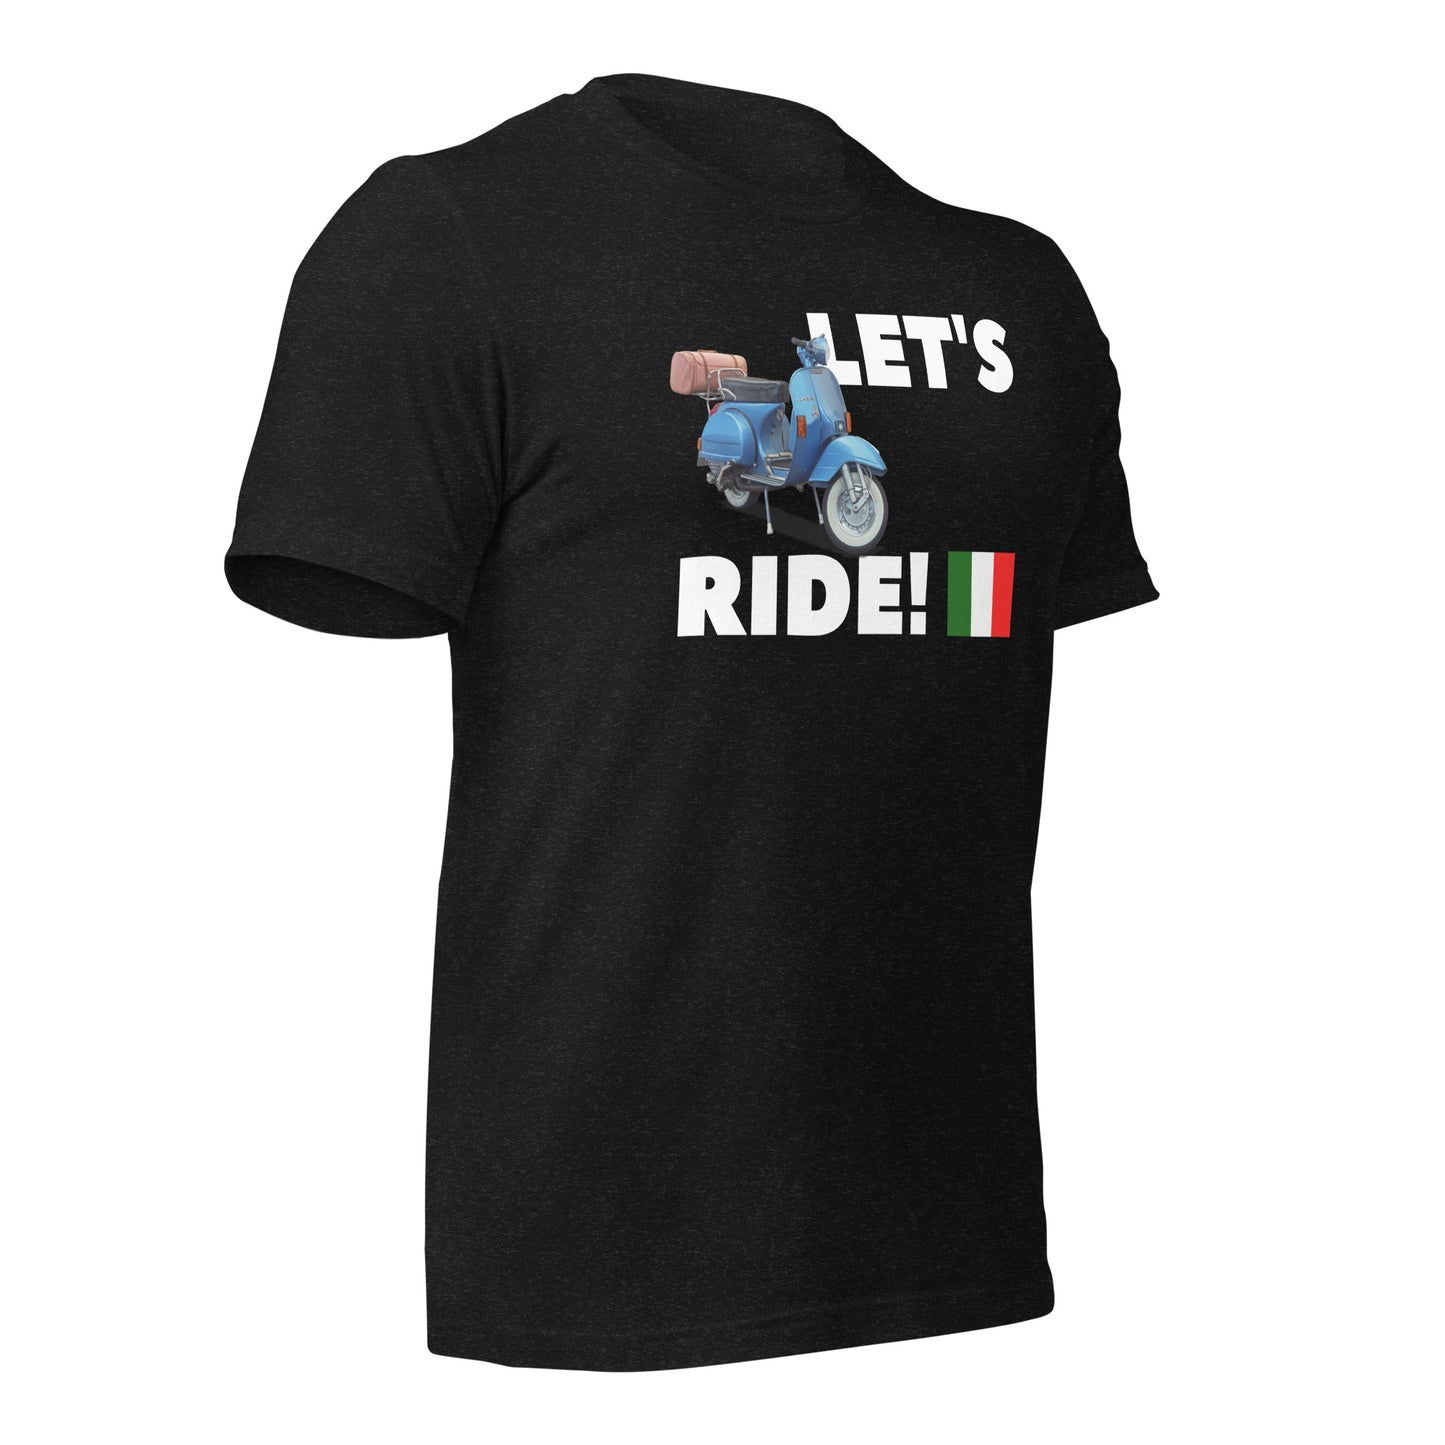 Let's Ride - Unisex t-shirt